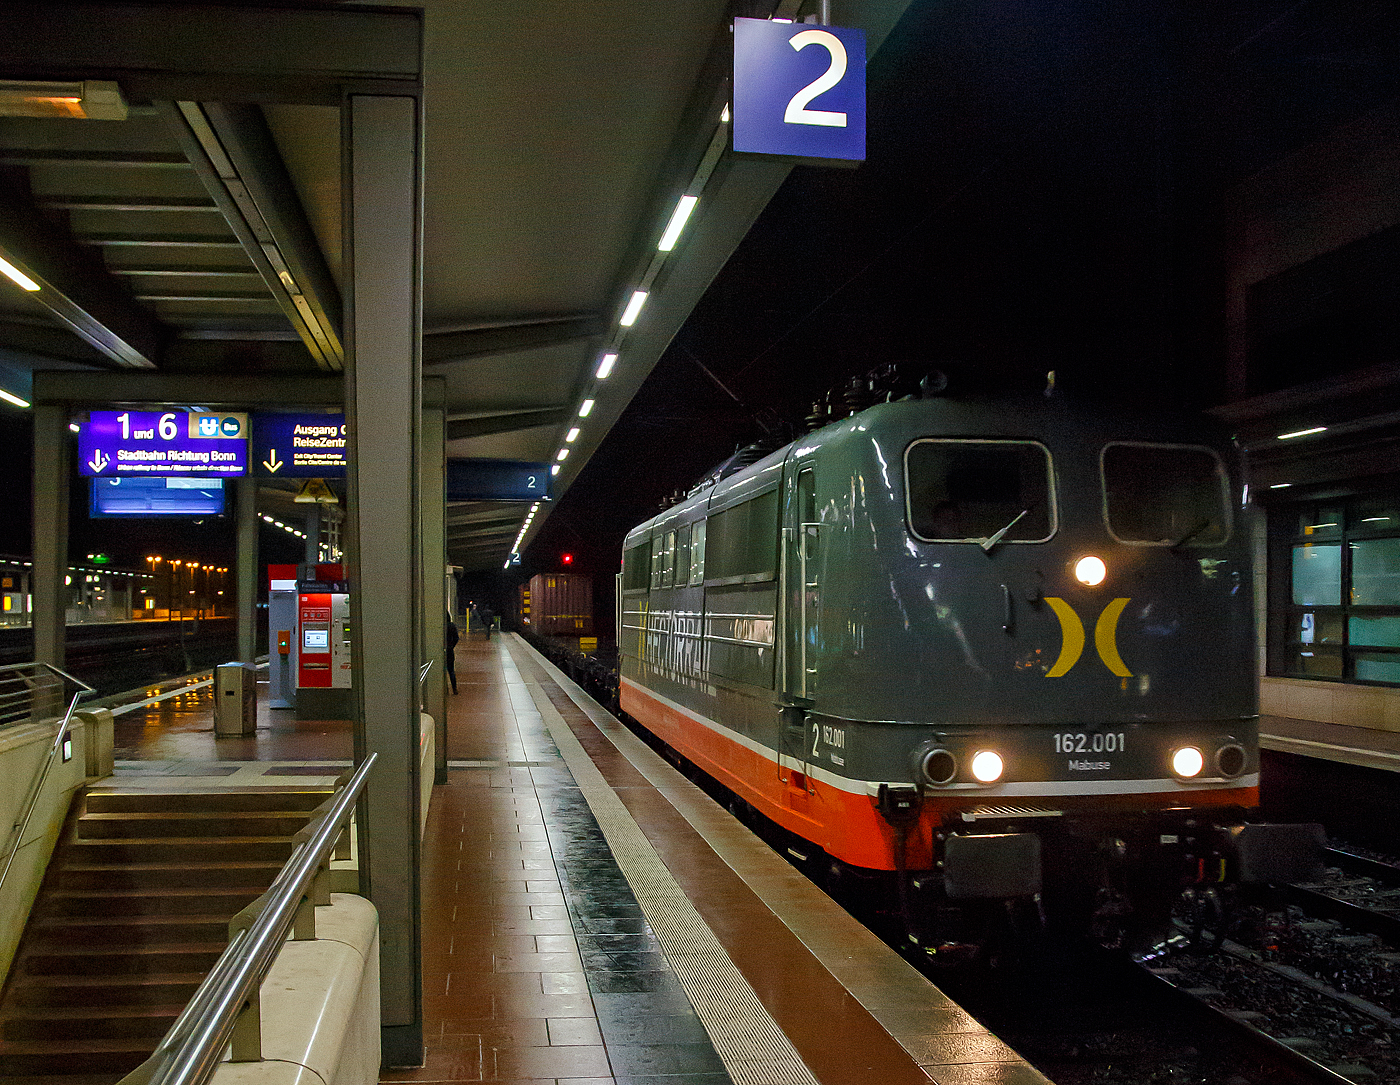 Nachts sind alle Katzen grau....Die 162.001  Mabuse  (91 80 6151 013-0 D-HCTR) der Hector Rail (Germany) GmbH rauscht am 20.02.2017 (23.41 Uhr) mit eine Containerzug durch den Bahnhof Siegburg/Bonn in Richtung Siegen. 

Die Lok Lok wurde 1973 von Krupp unter der Fabriknummer 5255 und als 151 013-0 an die DB geliefert. Bis zum 29.02.2016 war sie für die DB Cargo (91 80 6151 013-0 D-DB) unterwegs und wurde dann an die Hector Rail verkauft. Die Lok wird aber weiterhin in Deutschland registriert und wird nicht in Schweden geführt. 